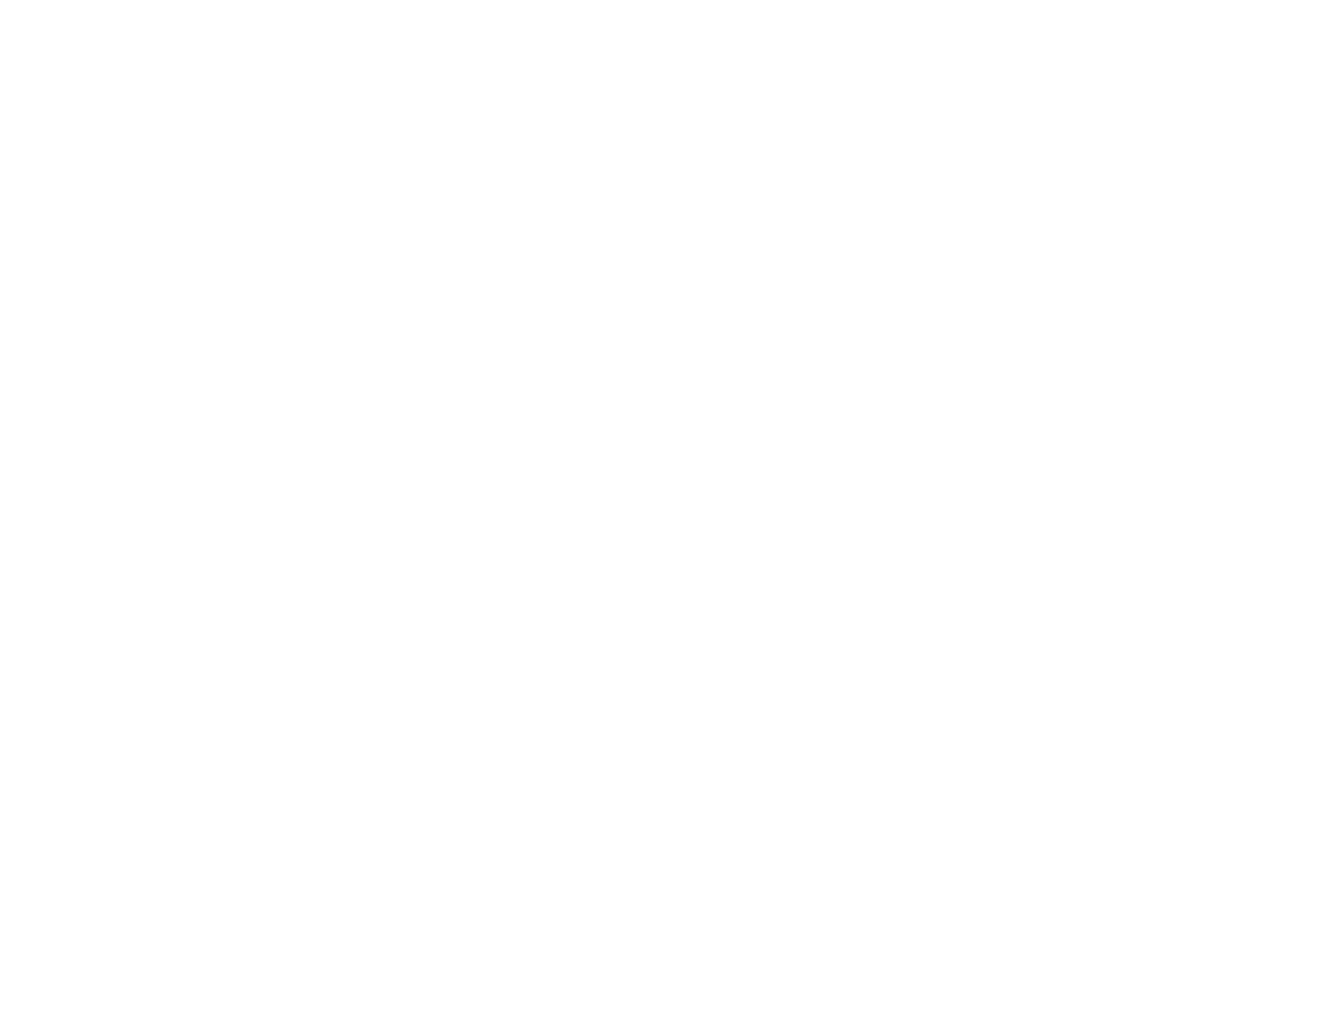 ITCSC logo